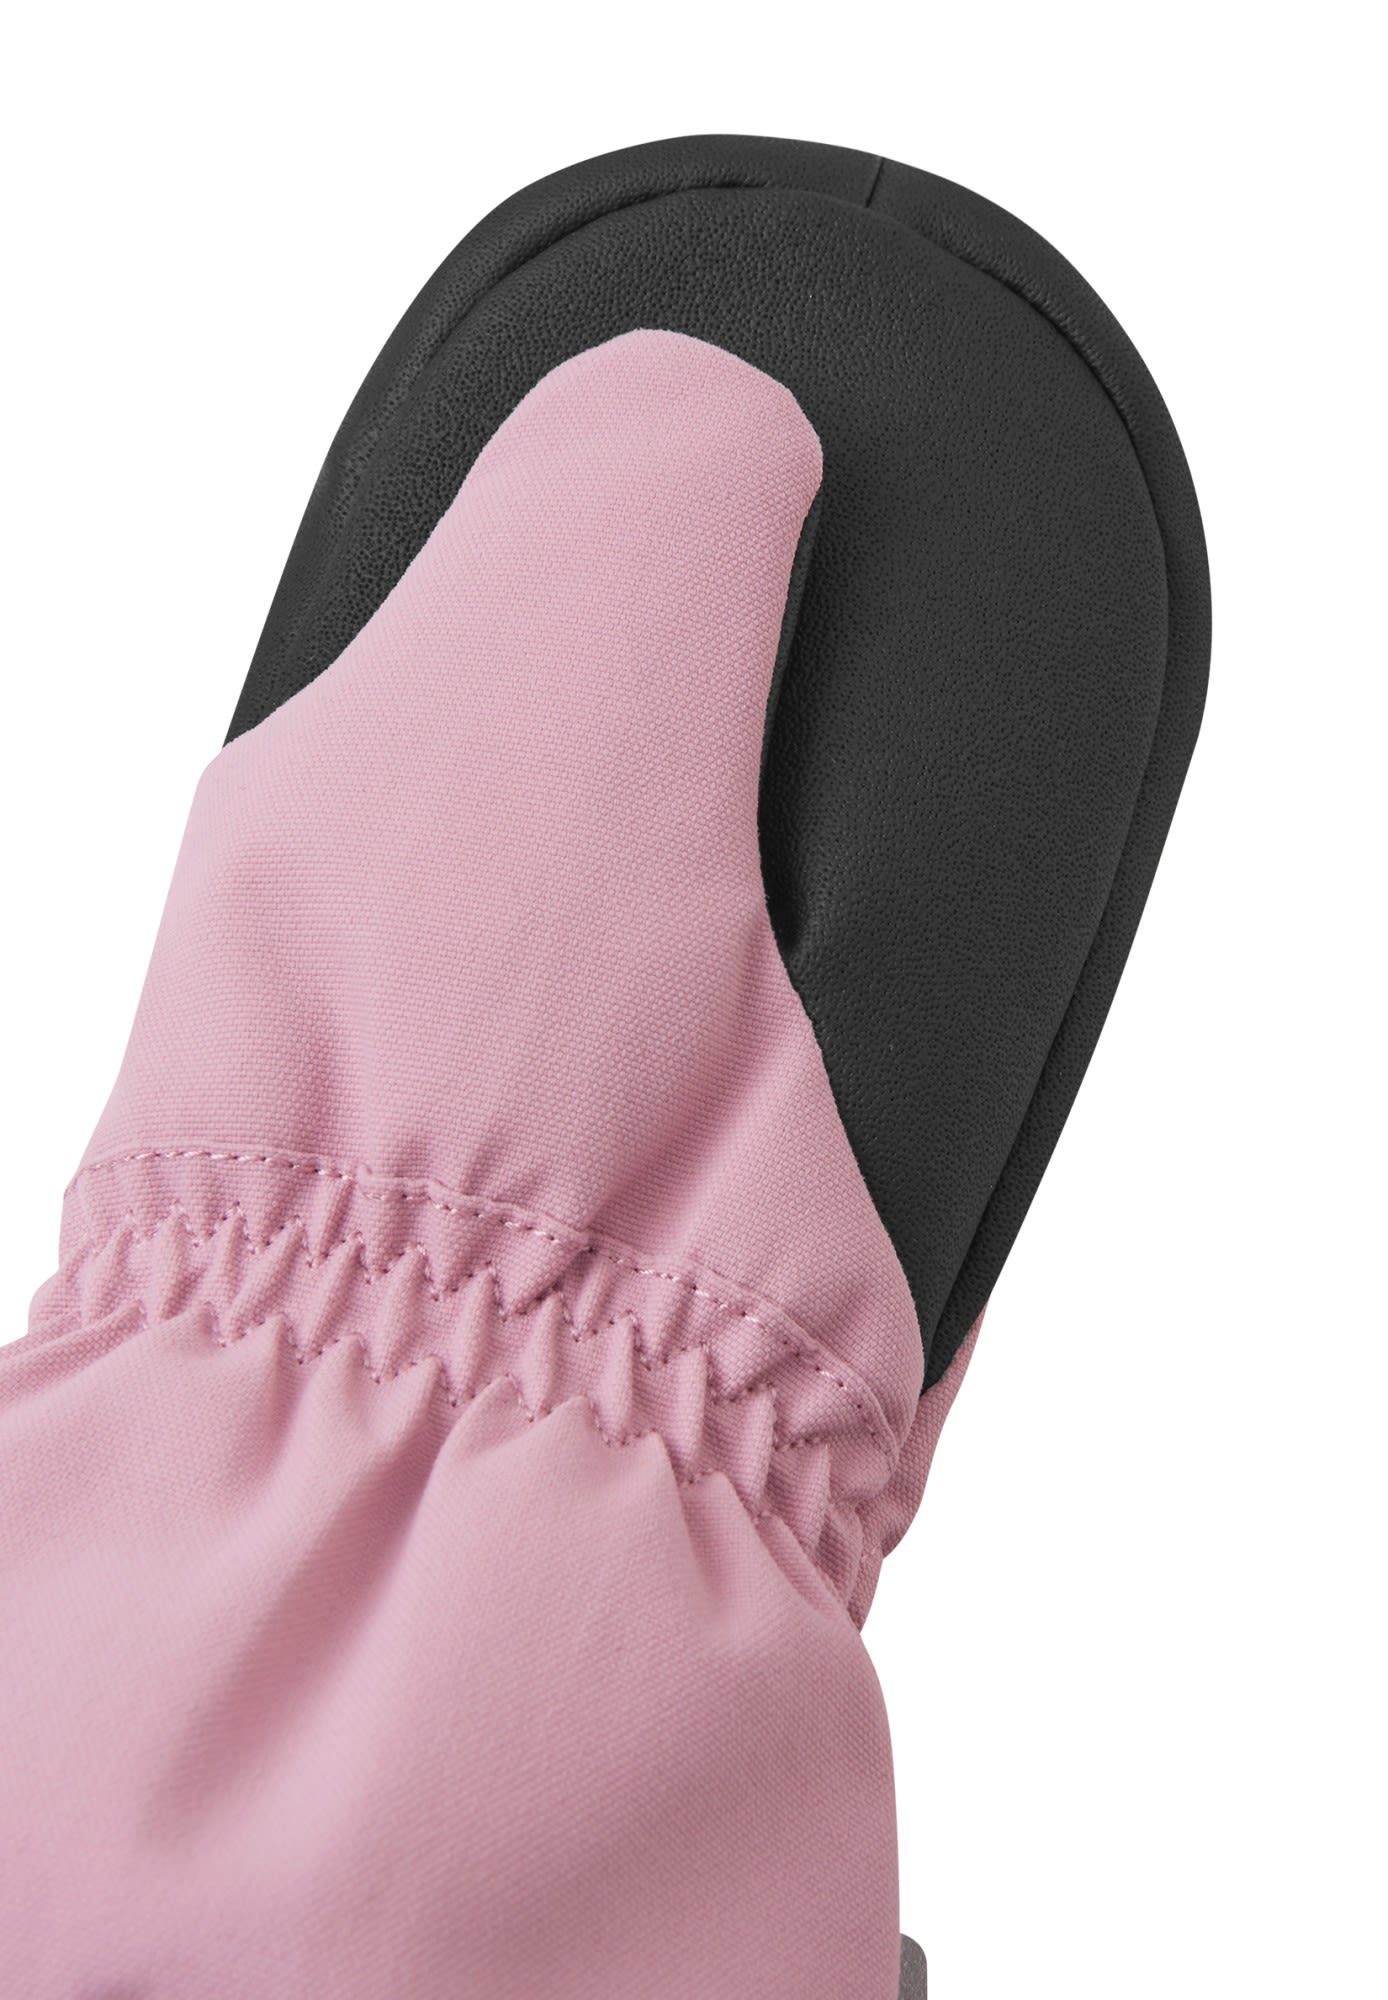 Reima Grey reima Accessoires Fleecehandschuhe Pink Kinder Mittens Toddlers Tepas